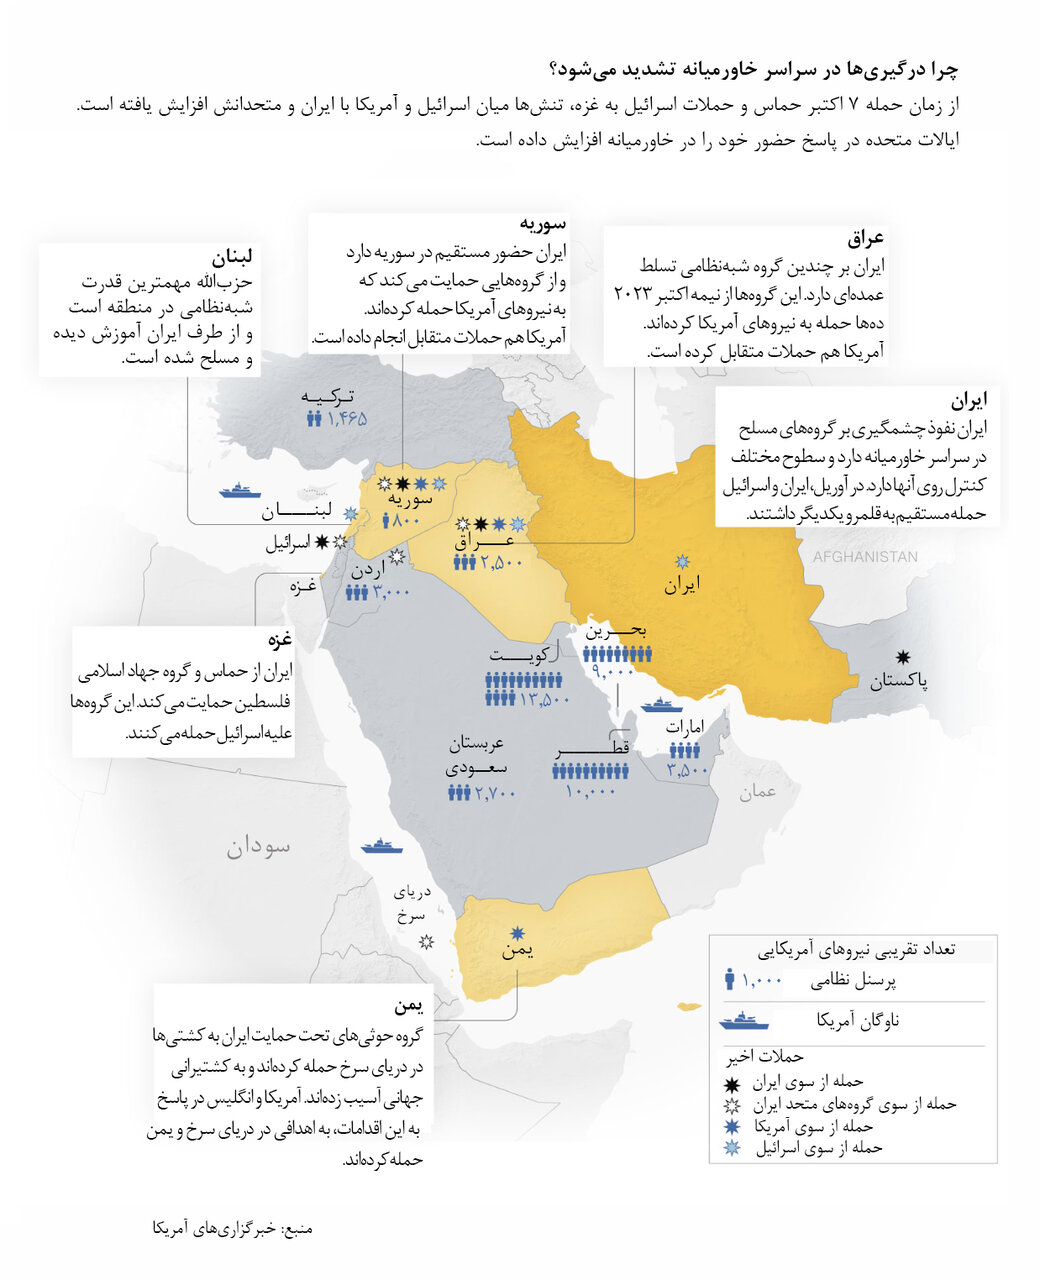 نقشه زد و خوردهای ۷ ماه اخیر در خاورمیانه | تعداد نیروهای آمریکا در ۹ کشور خاورمیانه